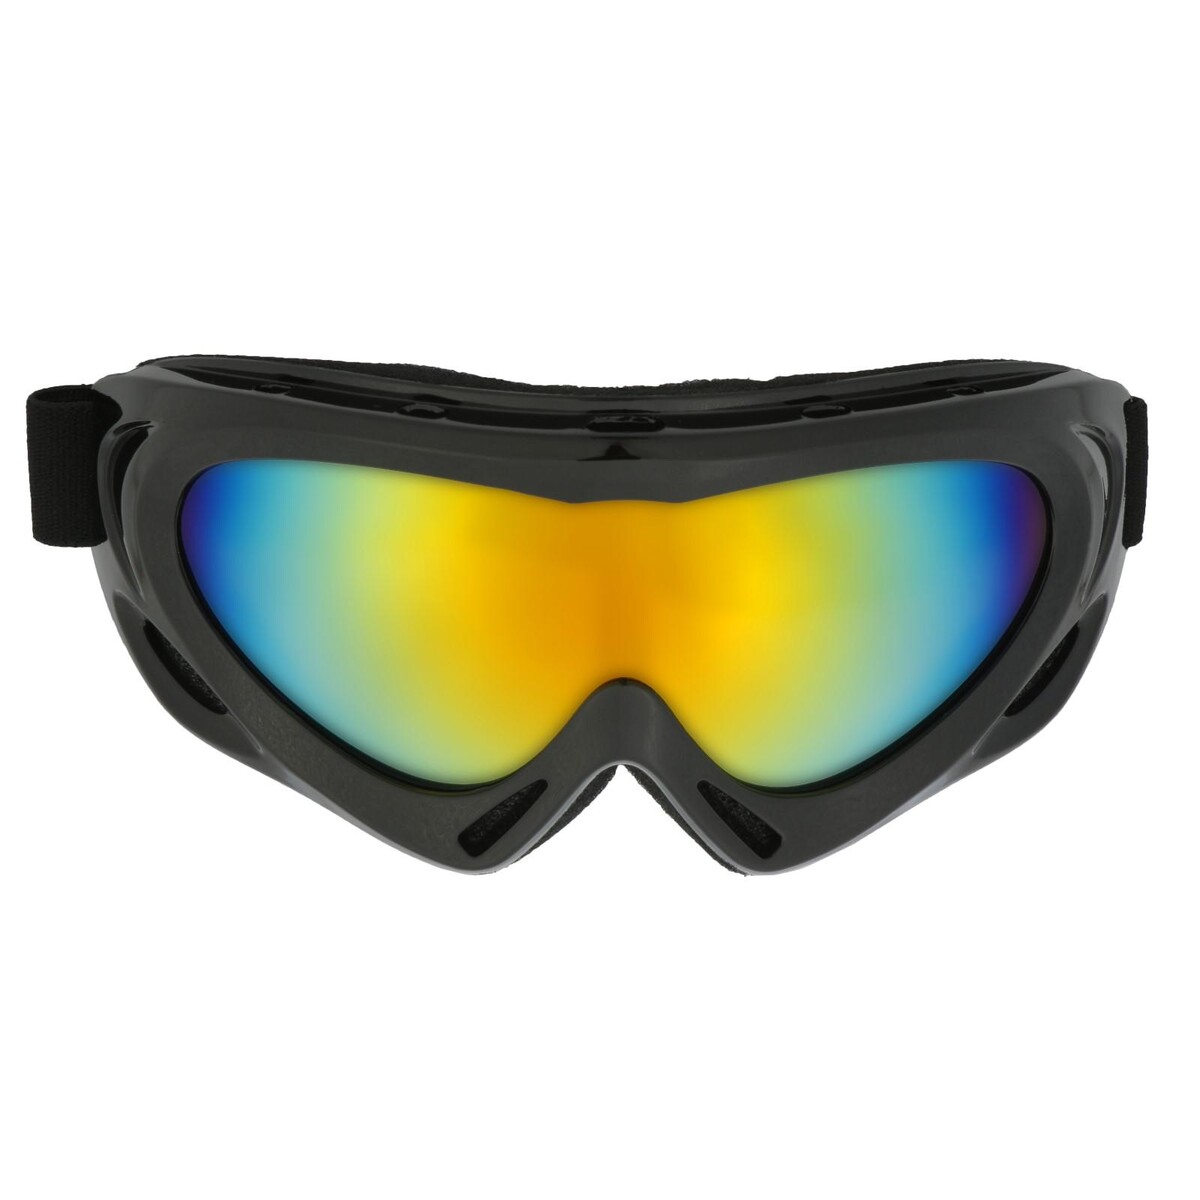 Очки для езды на мототехнике с доп. вентиляцией, стекло хамелеон, черные очки маска со съемной защитой носа стекло прозрачное черные